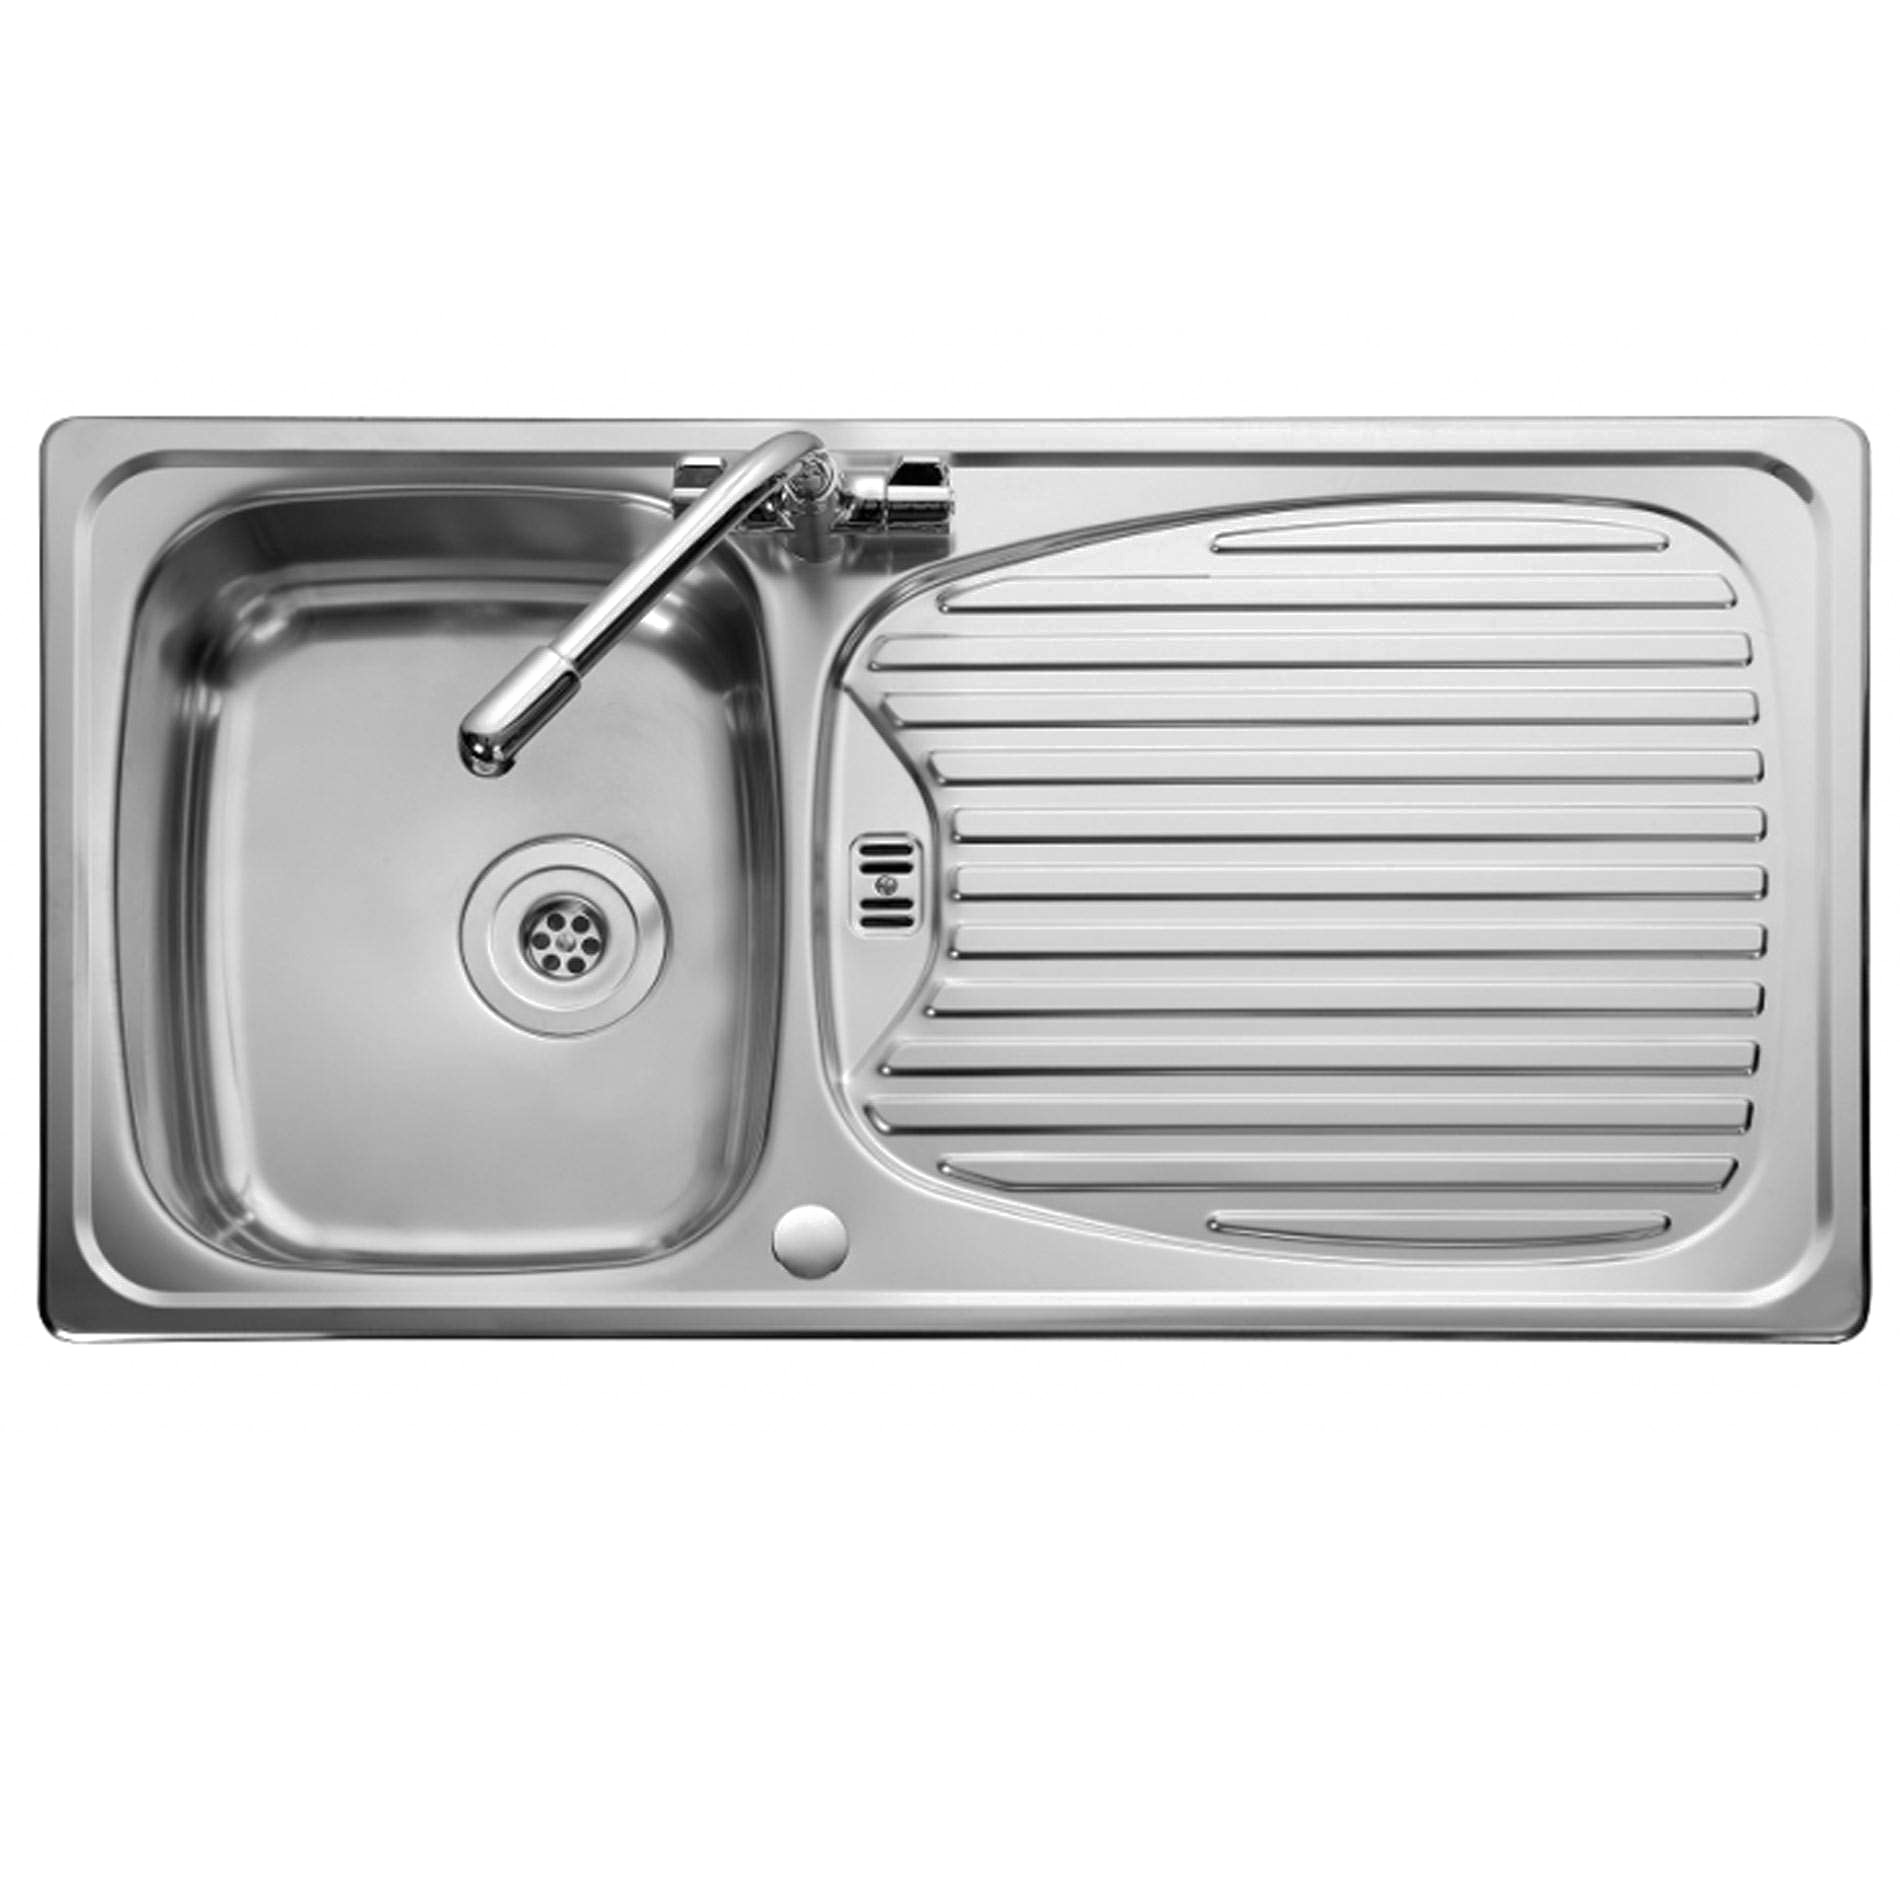 Fregadero de cocina de acero inoxidable PNG imagen Transparente